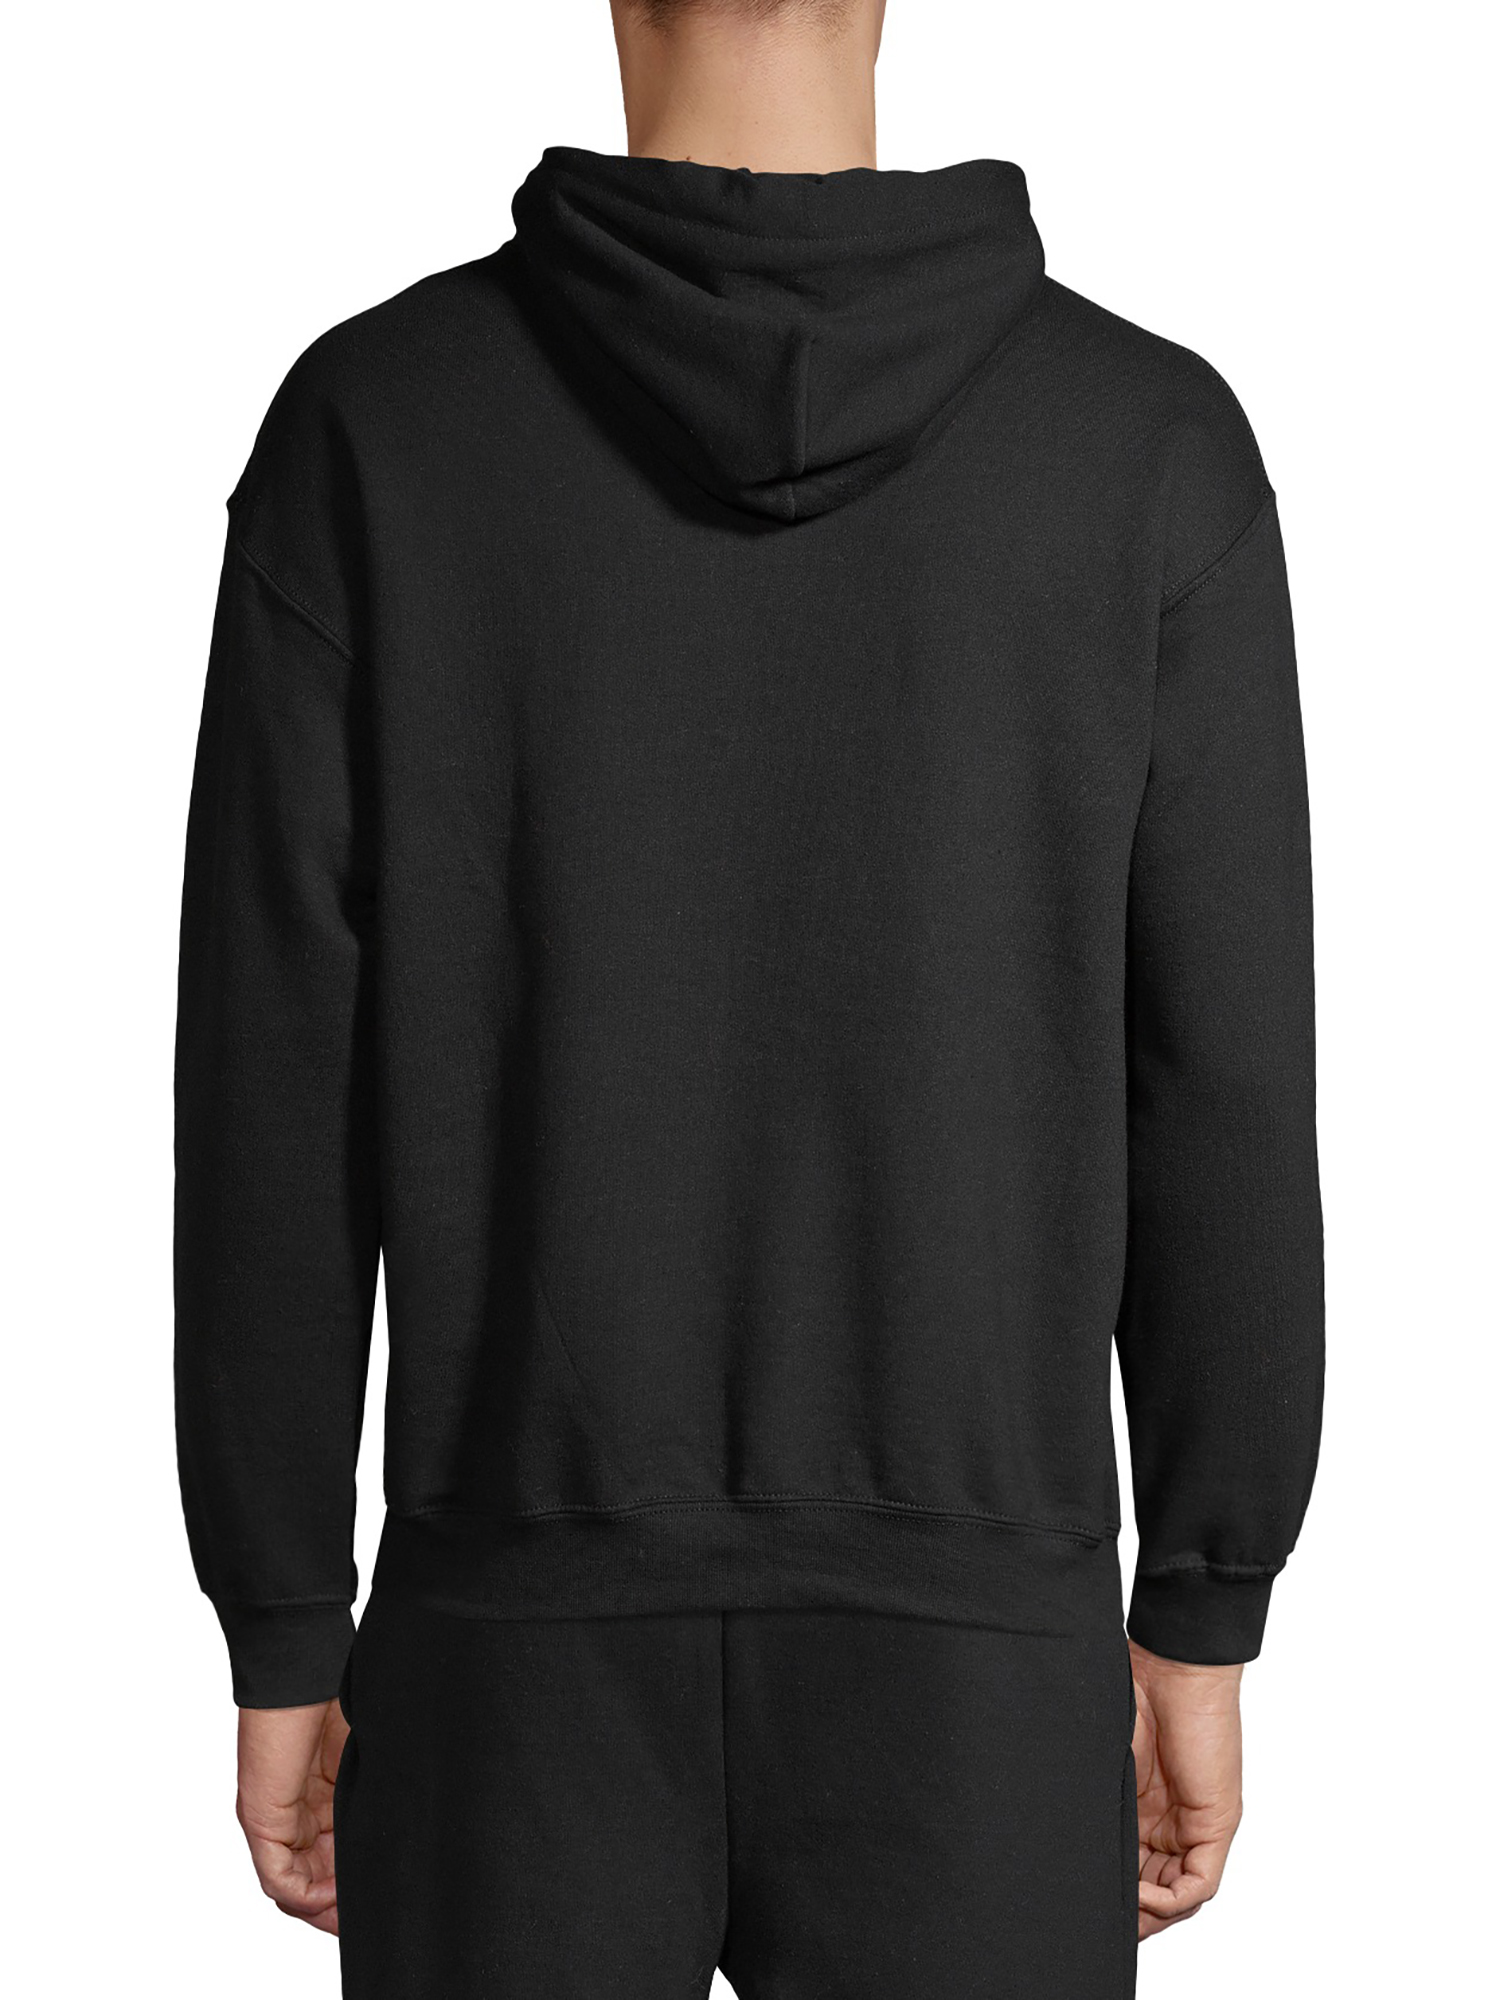 Gildan Unisex Heavy Blend Fleece Hooded Sweatshirt, Size Small to 3XL - image 5 of 6